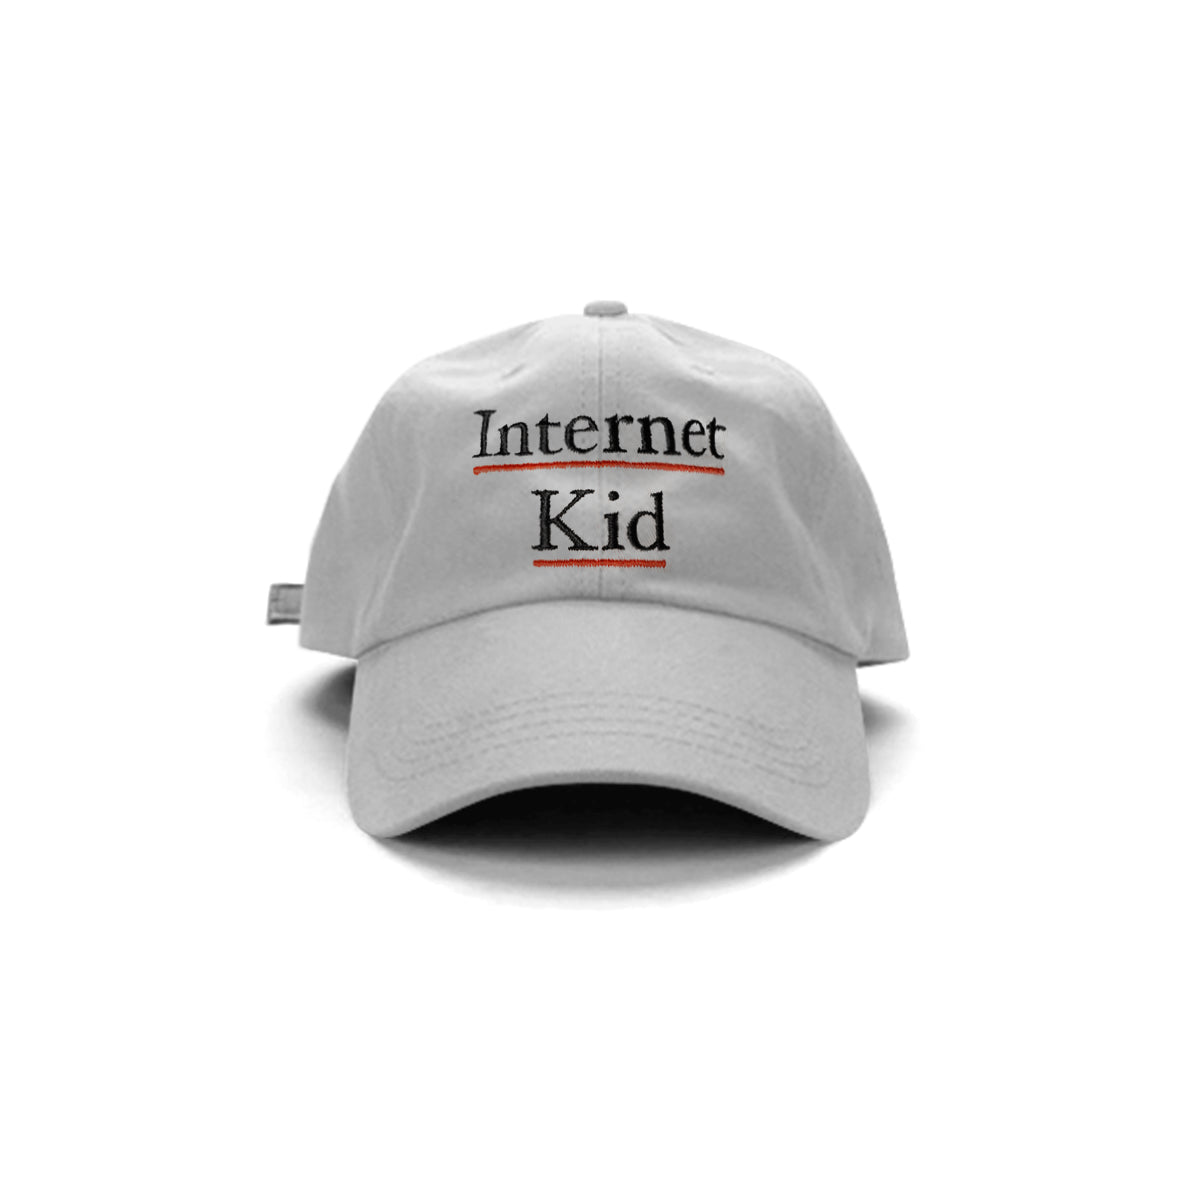 INTERNET KID HAT - MJN